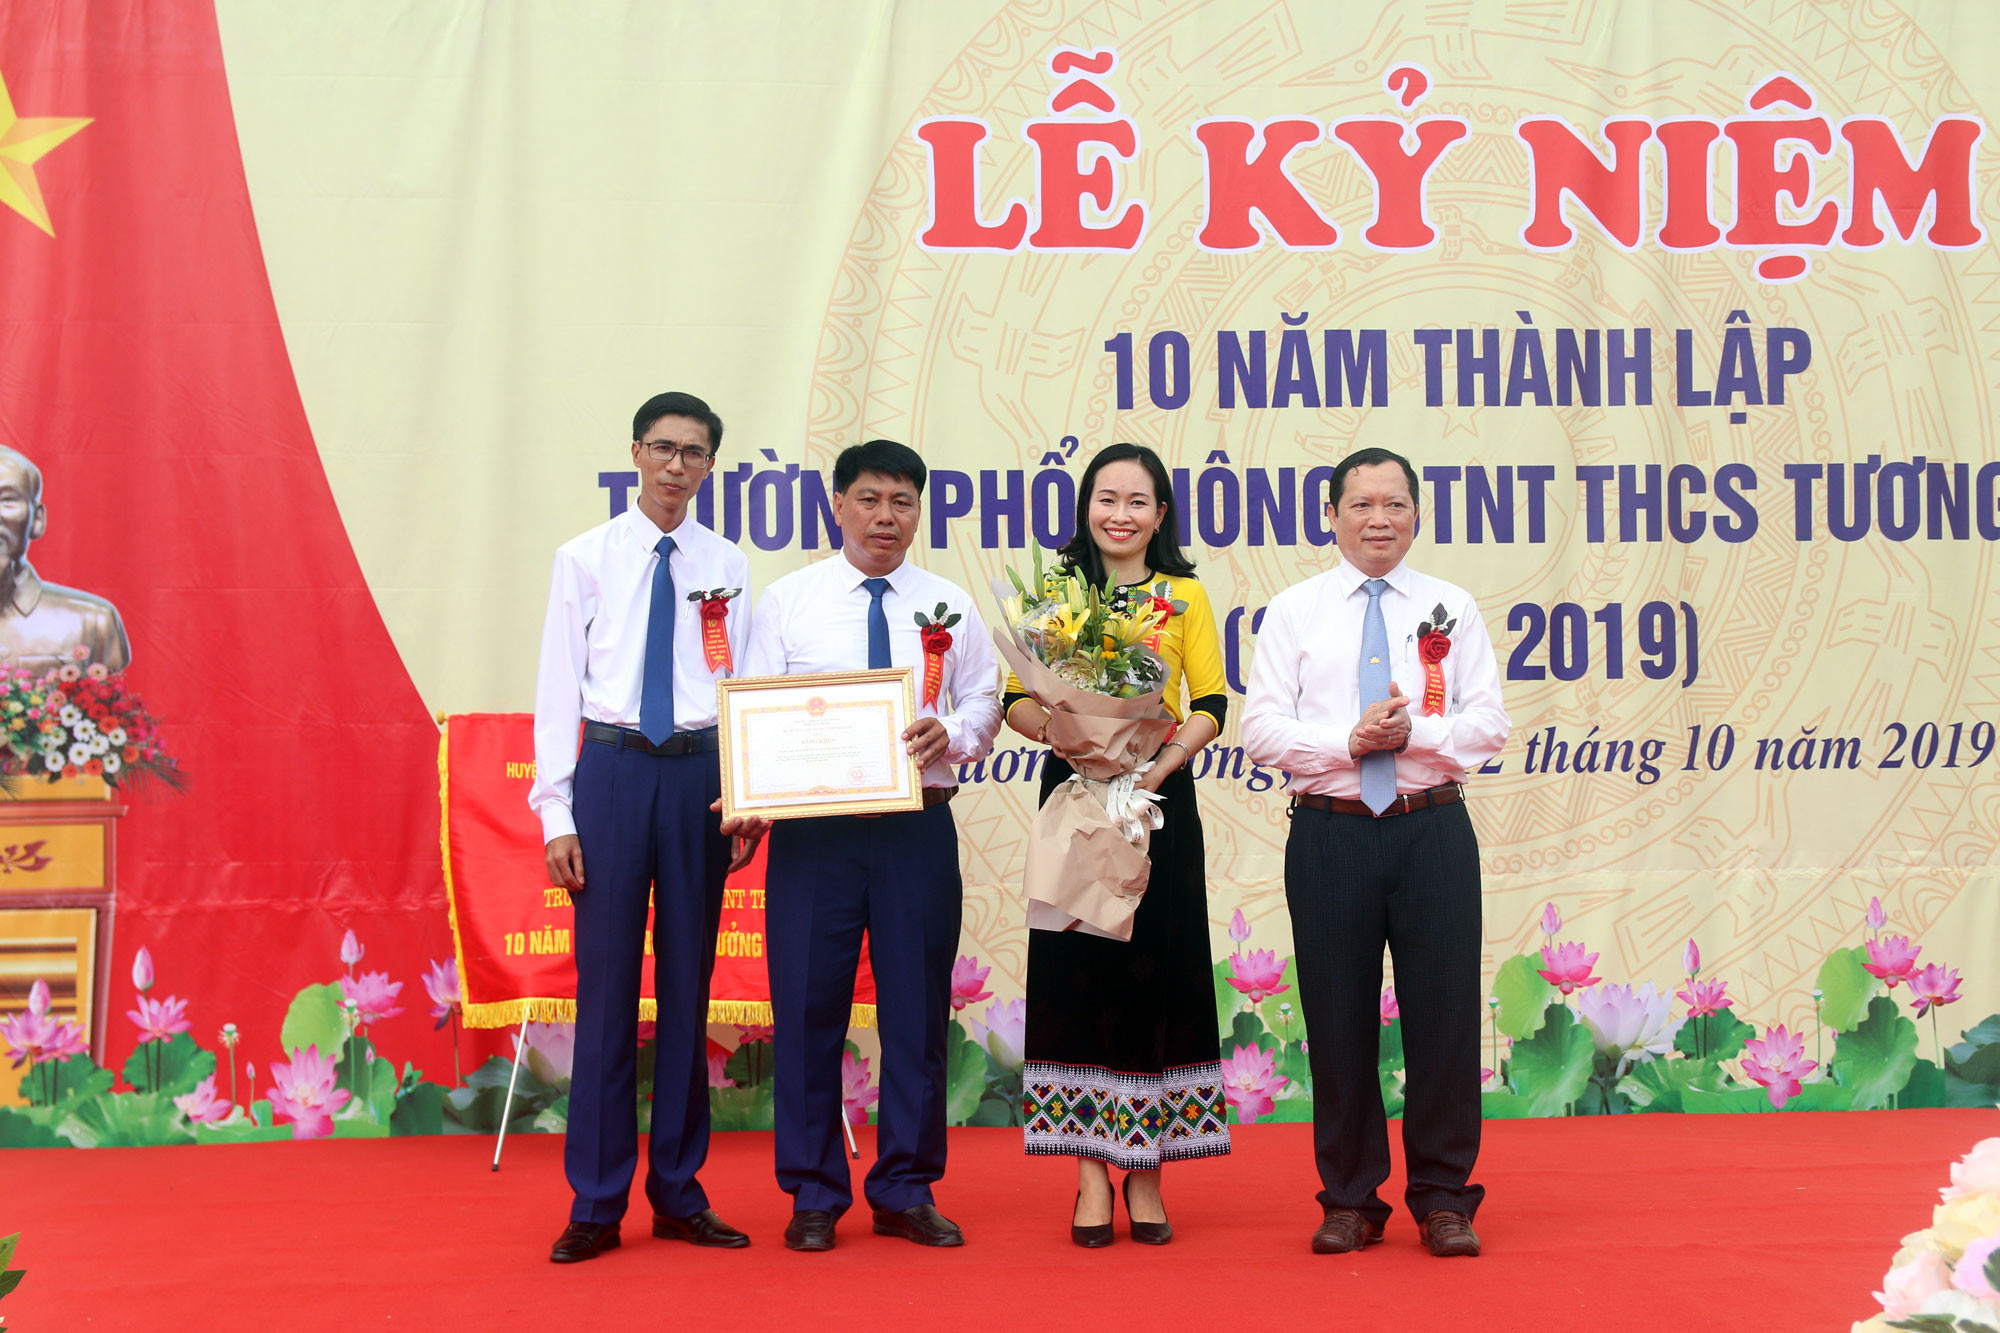 Nhân dịp này trường PTDTNT THCS Tương Dương vinh dự được nhận Bằng khen của các cấp.